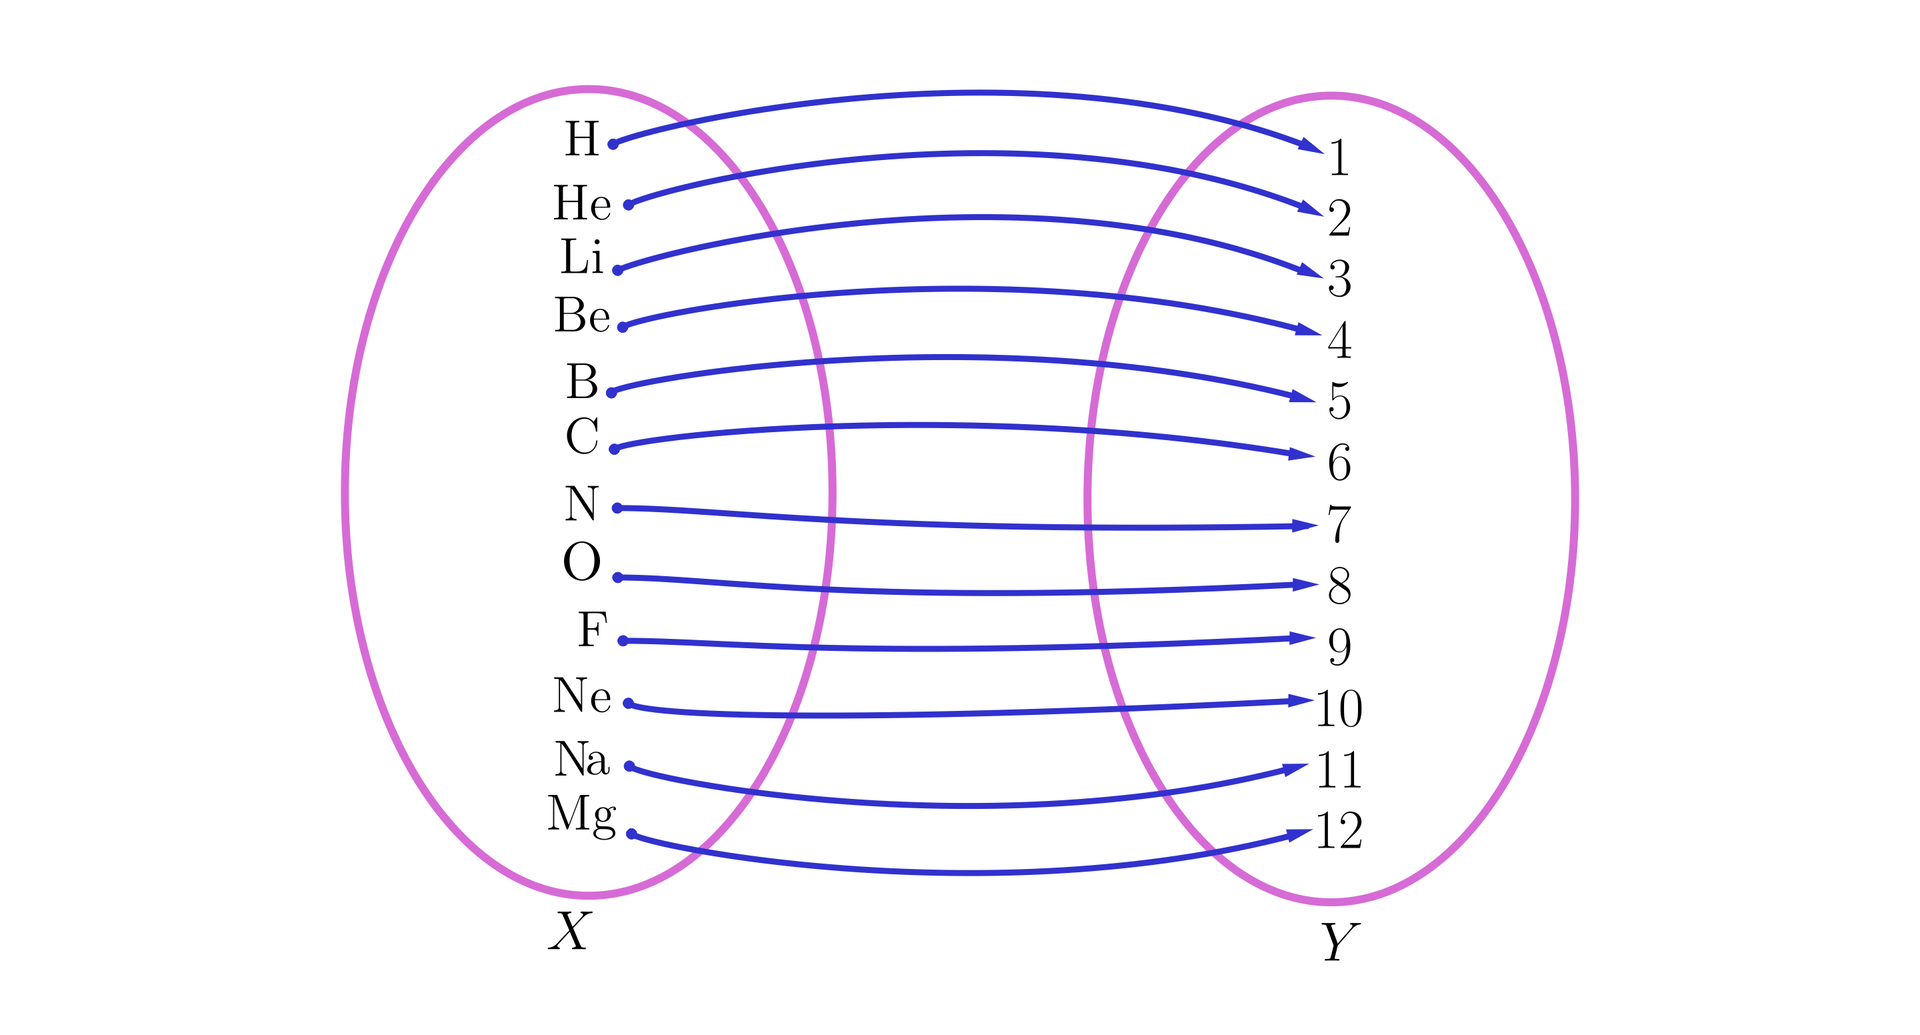 Rysunek przedstawia graf składający się z dwóch zbiorów reprezentowanych przez dwie pionowo ustawione elipsy. Relacja między zbiorami  określona jest za pomocą strzałek biegnących ze zbioru X po lewej stronie do zbioru Y po  prawej stronie. Zbiór X składa się z symboli pierwiastków: wodoru, helu, litu, berylu, boru, węgla, azotu,  tlenu, fluoru, neonu, sodu, magnezu. Każdemu pierwiastkowi przyporządkowany jest dokładnie jeden element ze bioru Y.  Elementami zbioru Y są liczby od 1 do 12. Każdy element ze zbioru Y ma swoją parę.